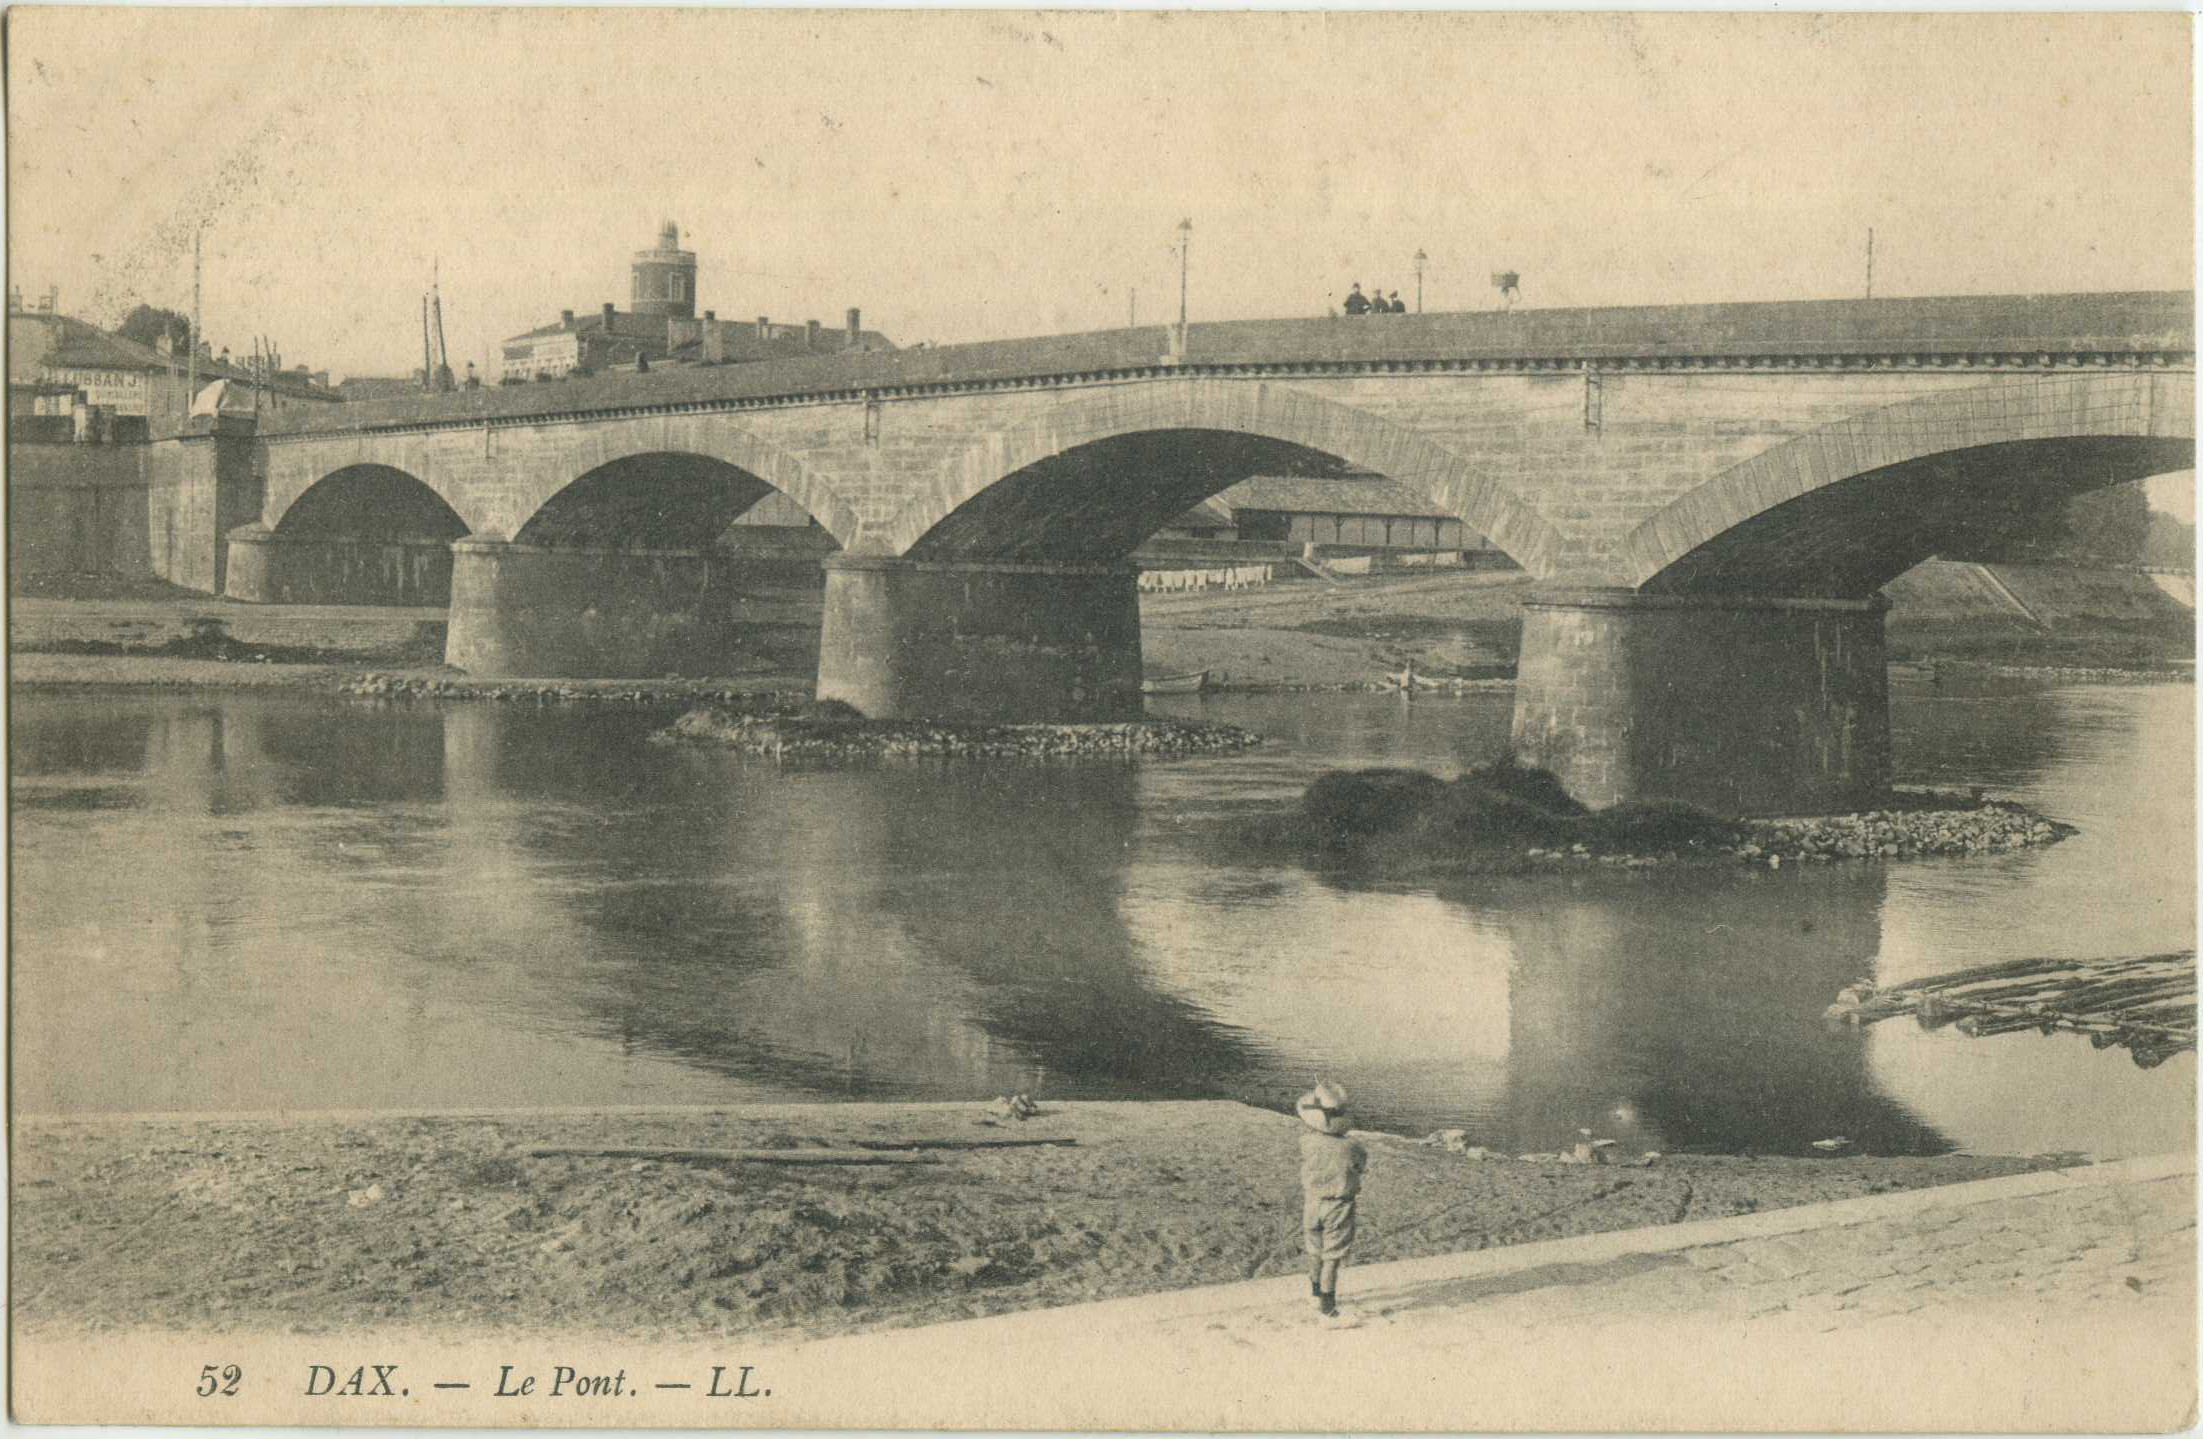 Dax - Le Pont.